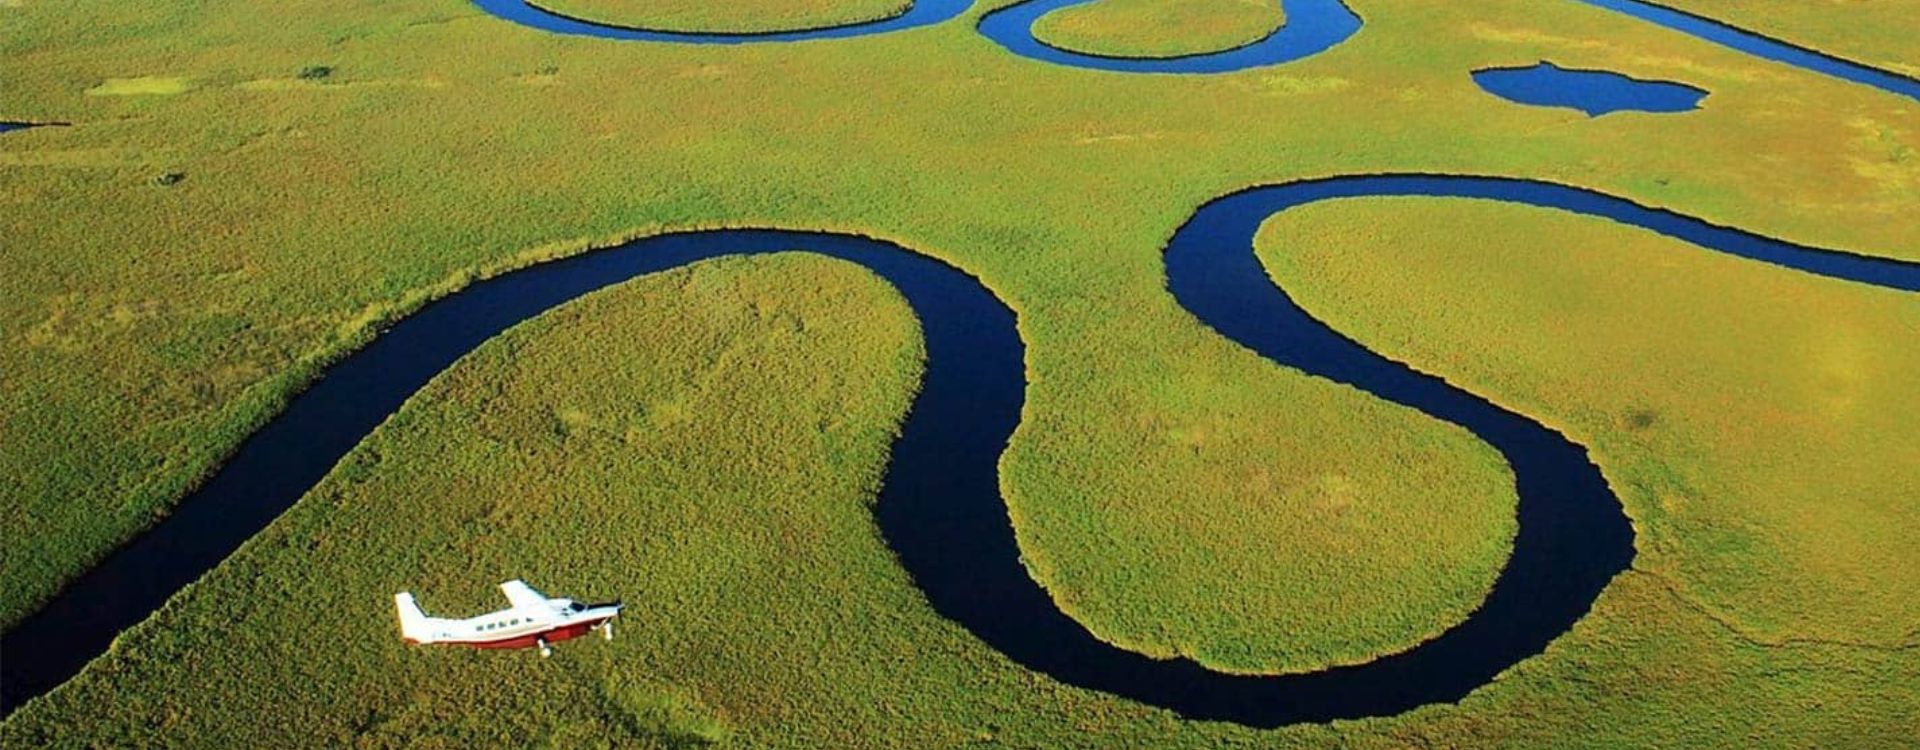 Getting To Okavango Delta